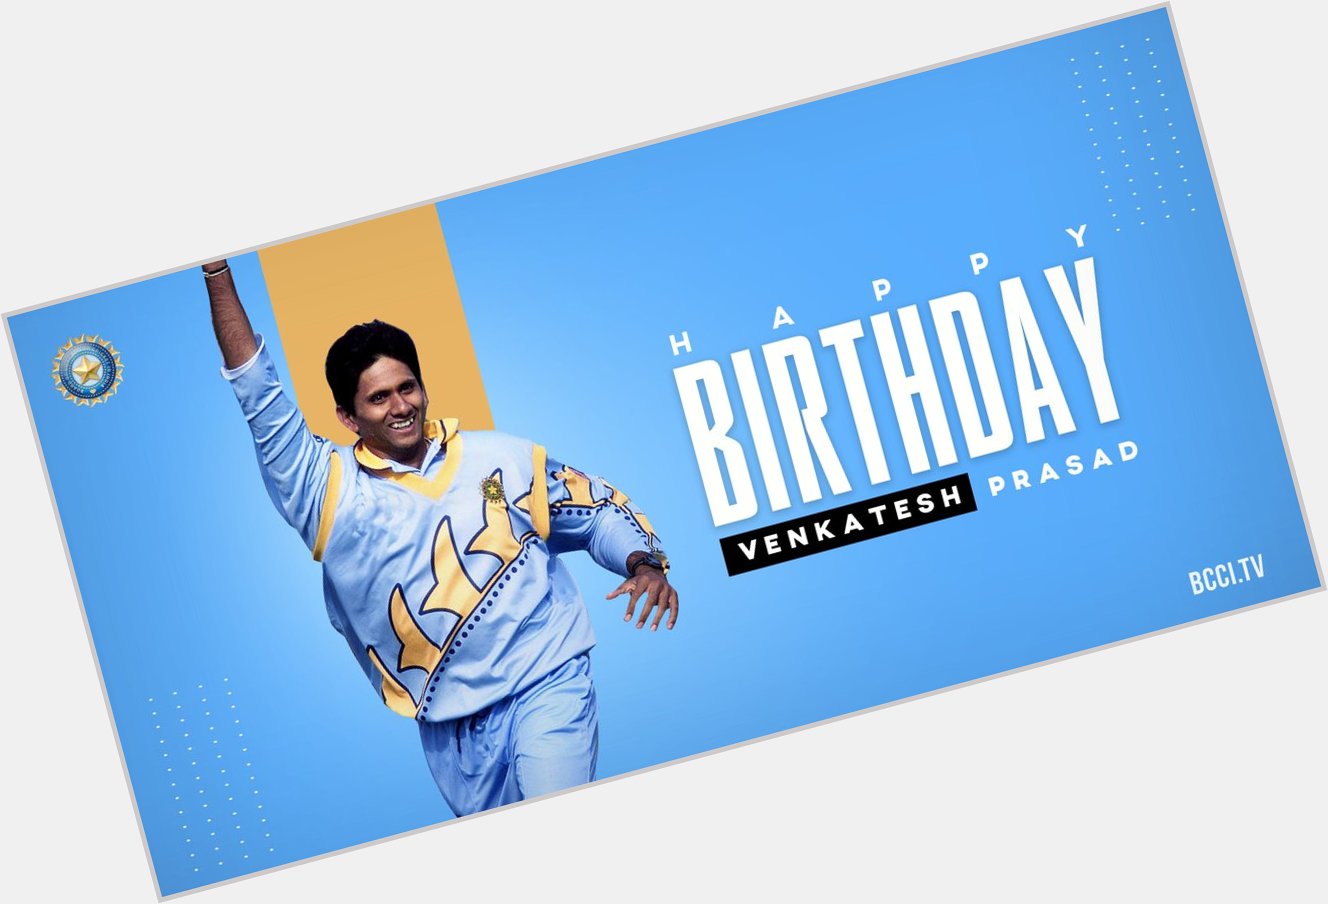 Happy birthday to former bowler Venkatesh Prasad! 